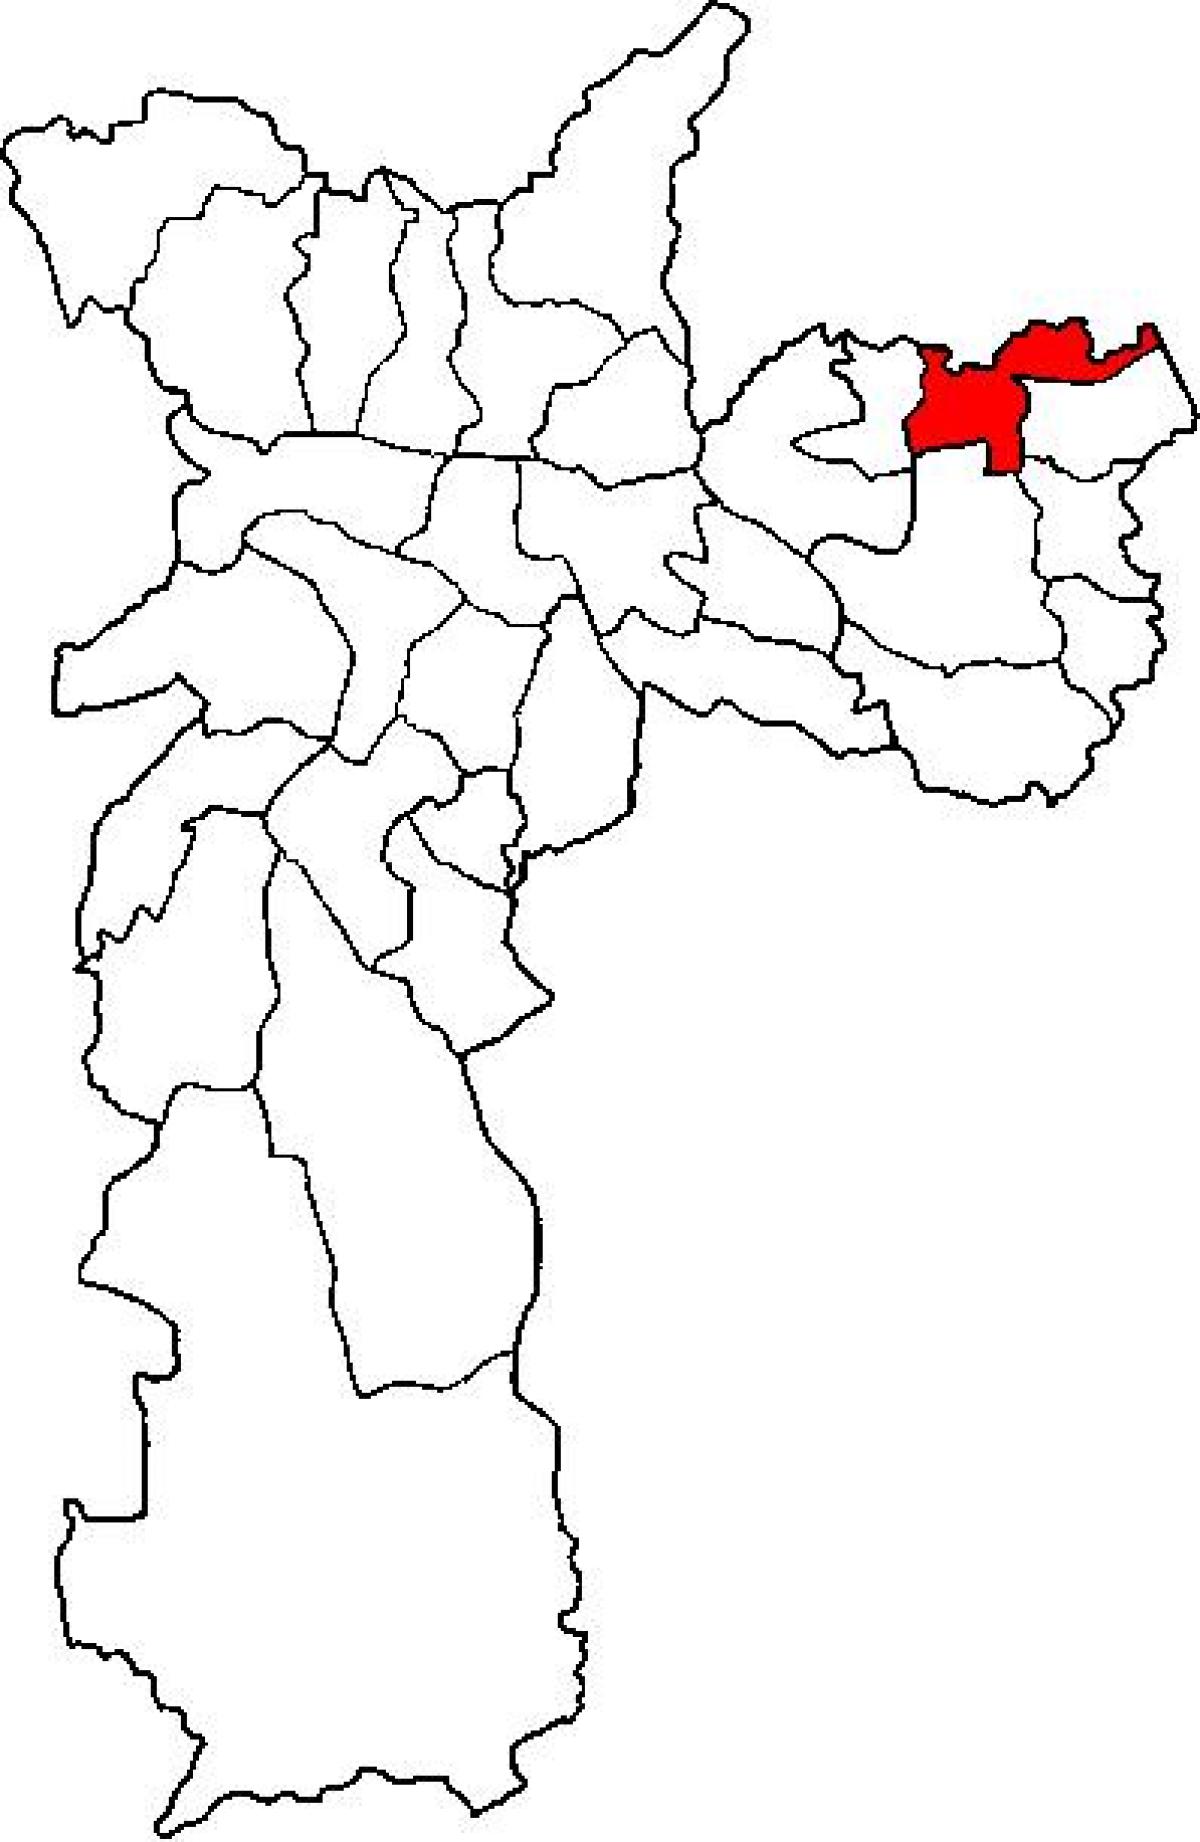 नक्शे के सं मिगेल पौलिस्ता में उप-प्रान्त साओ पाउलो